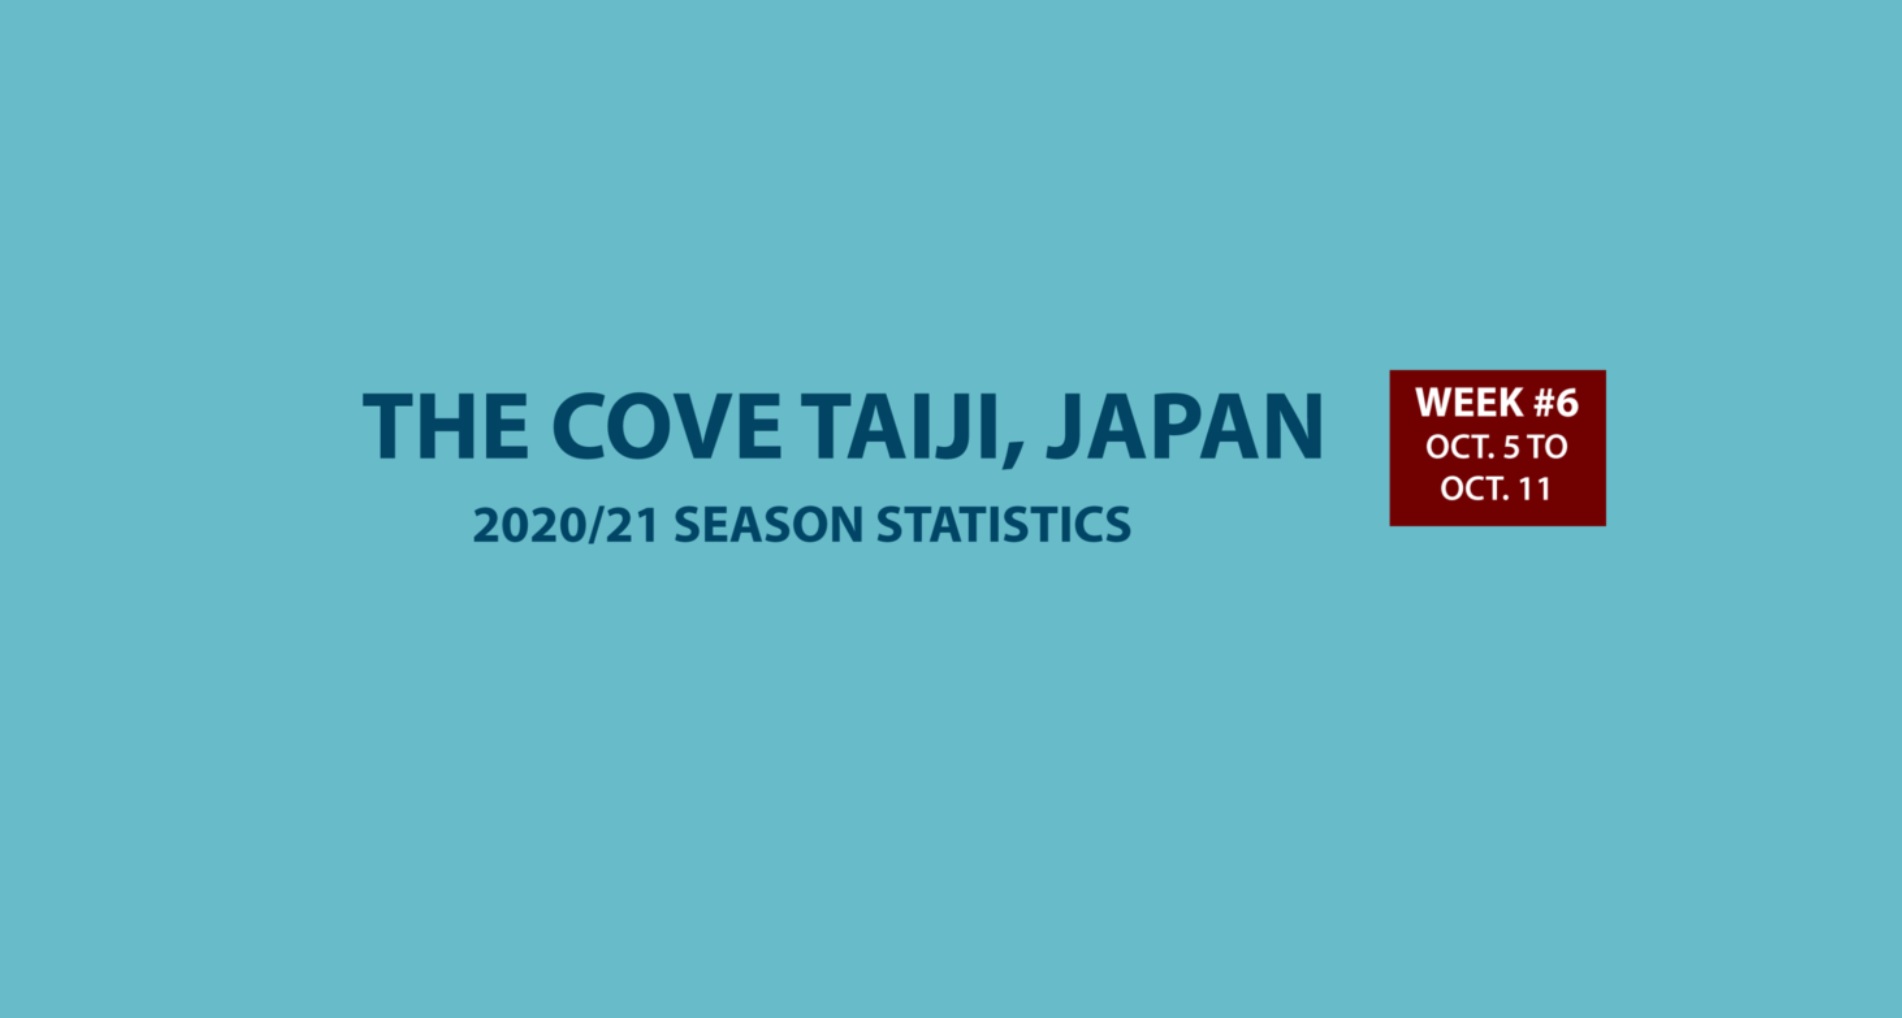 Chasse au dauphin à Taïji (Japon) – Bilan semaine du 05 au 11 octobre 2020 #06